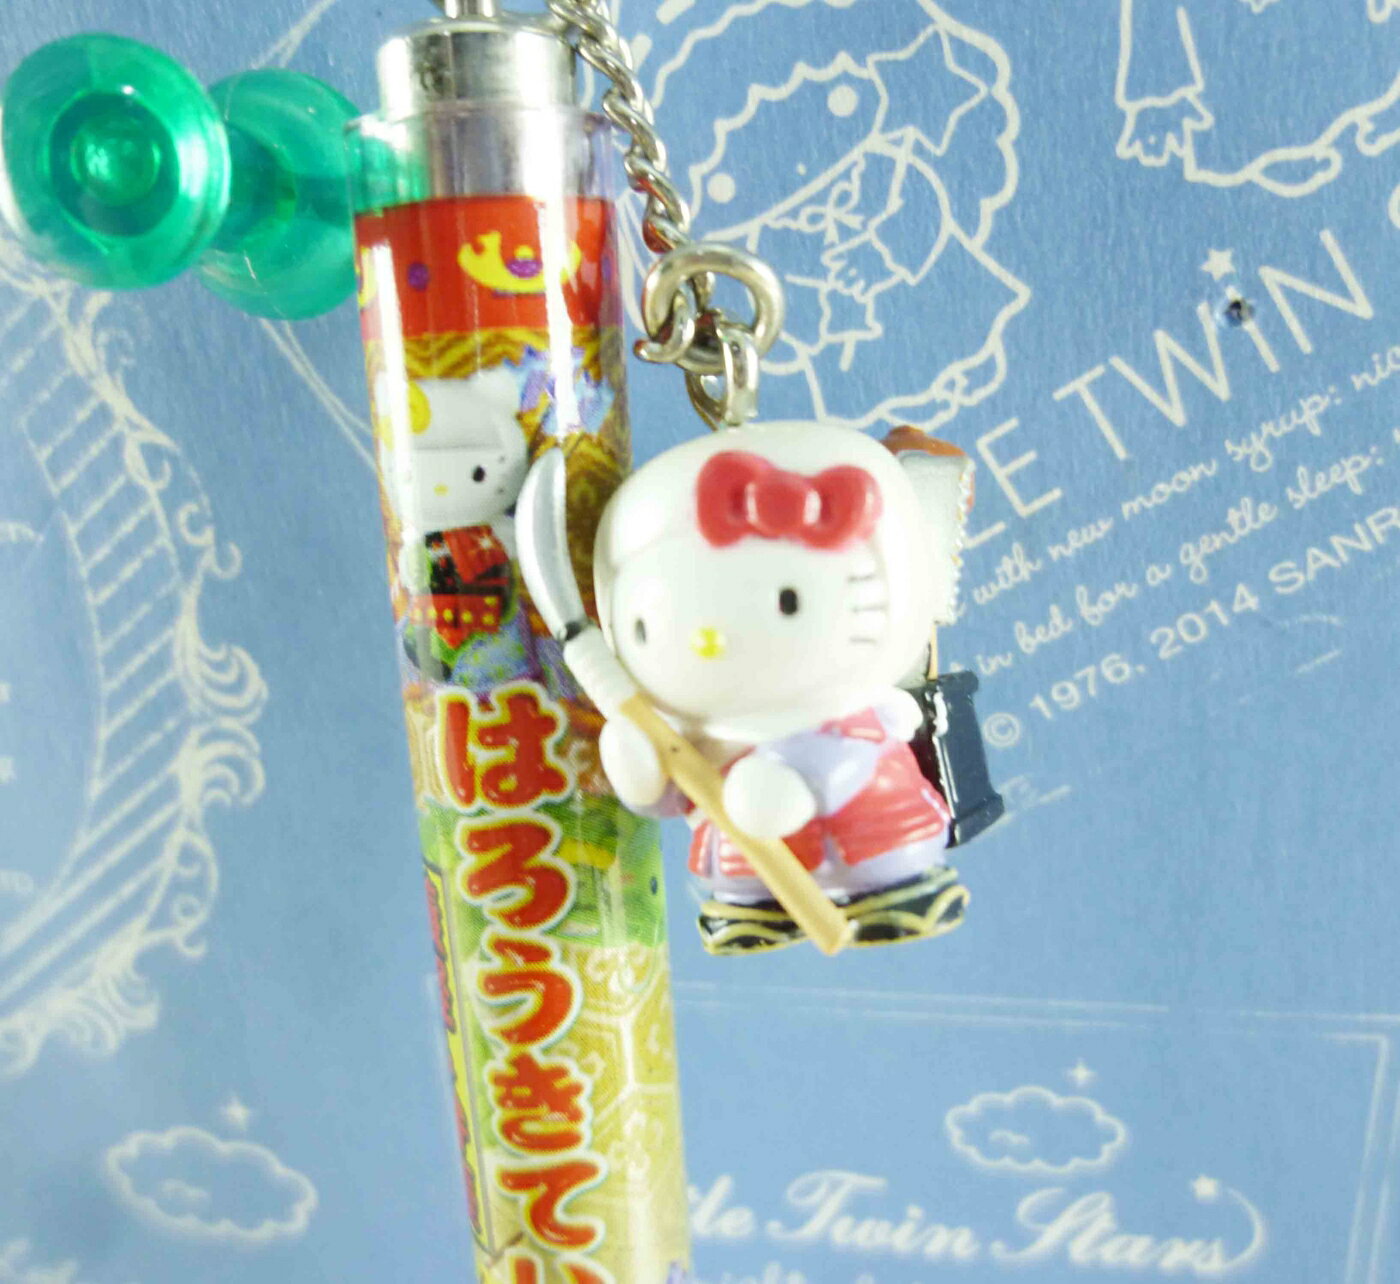 【震撼精品百貨】Hello Kitty 凱蒂貓 KITTY限定版原子筆-義經圖案 震撼日式精品百貨